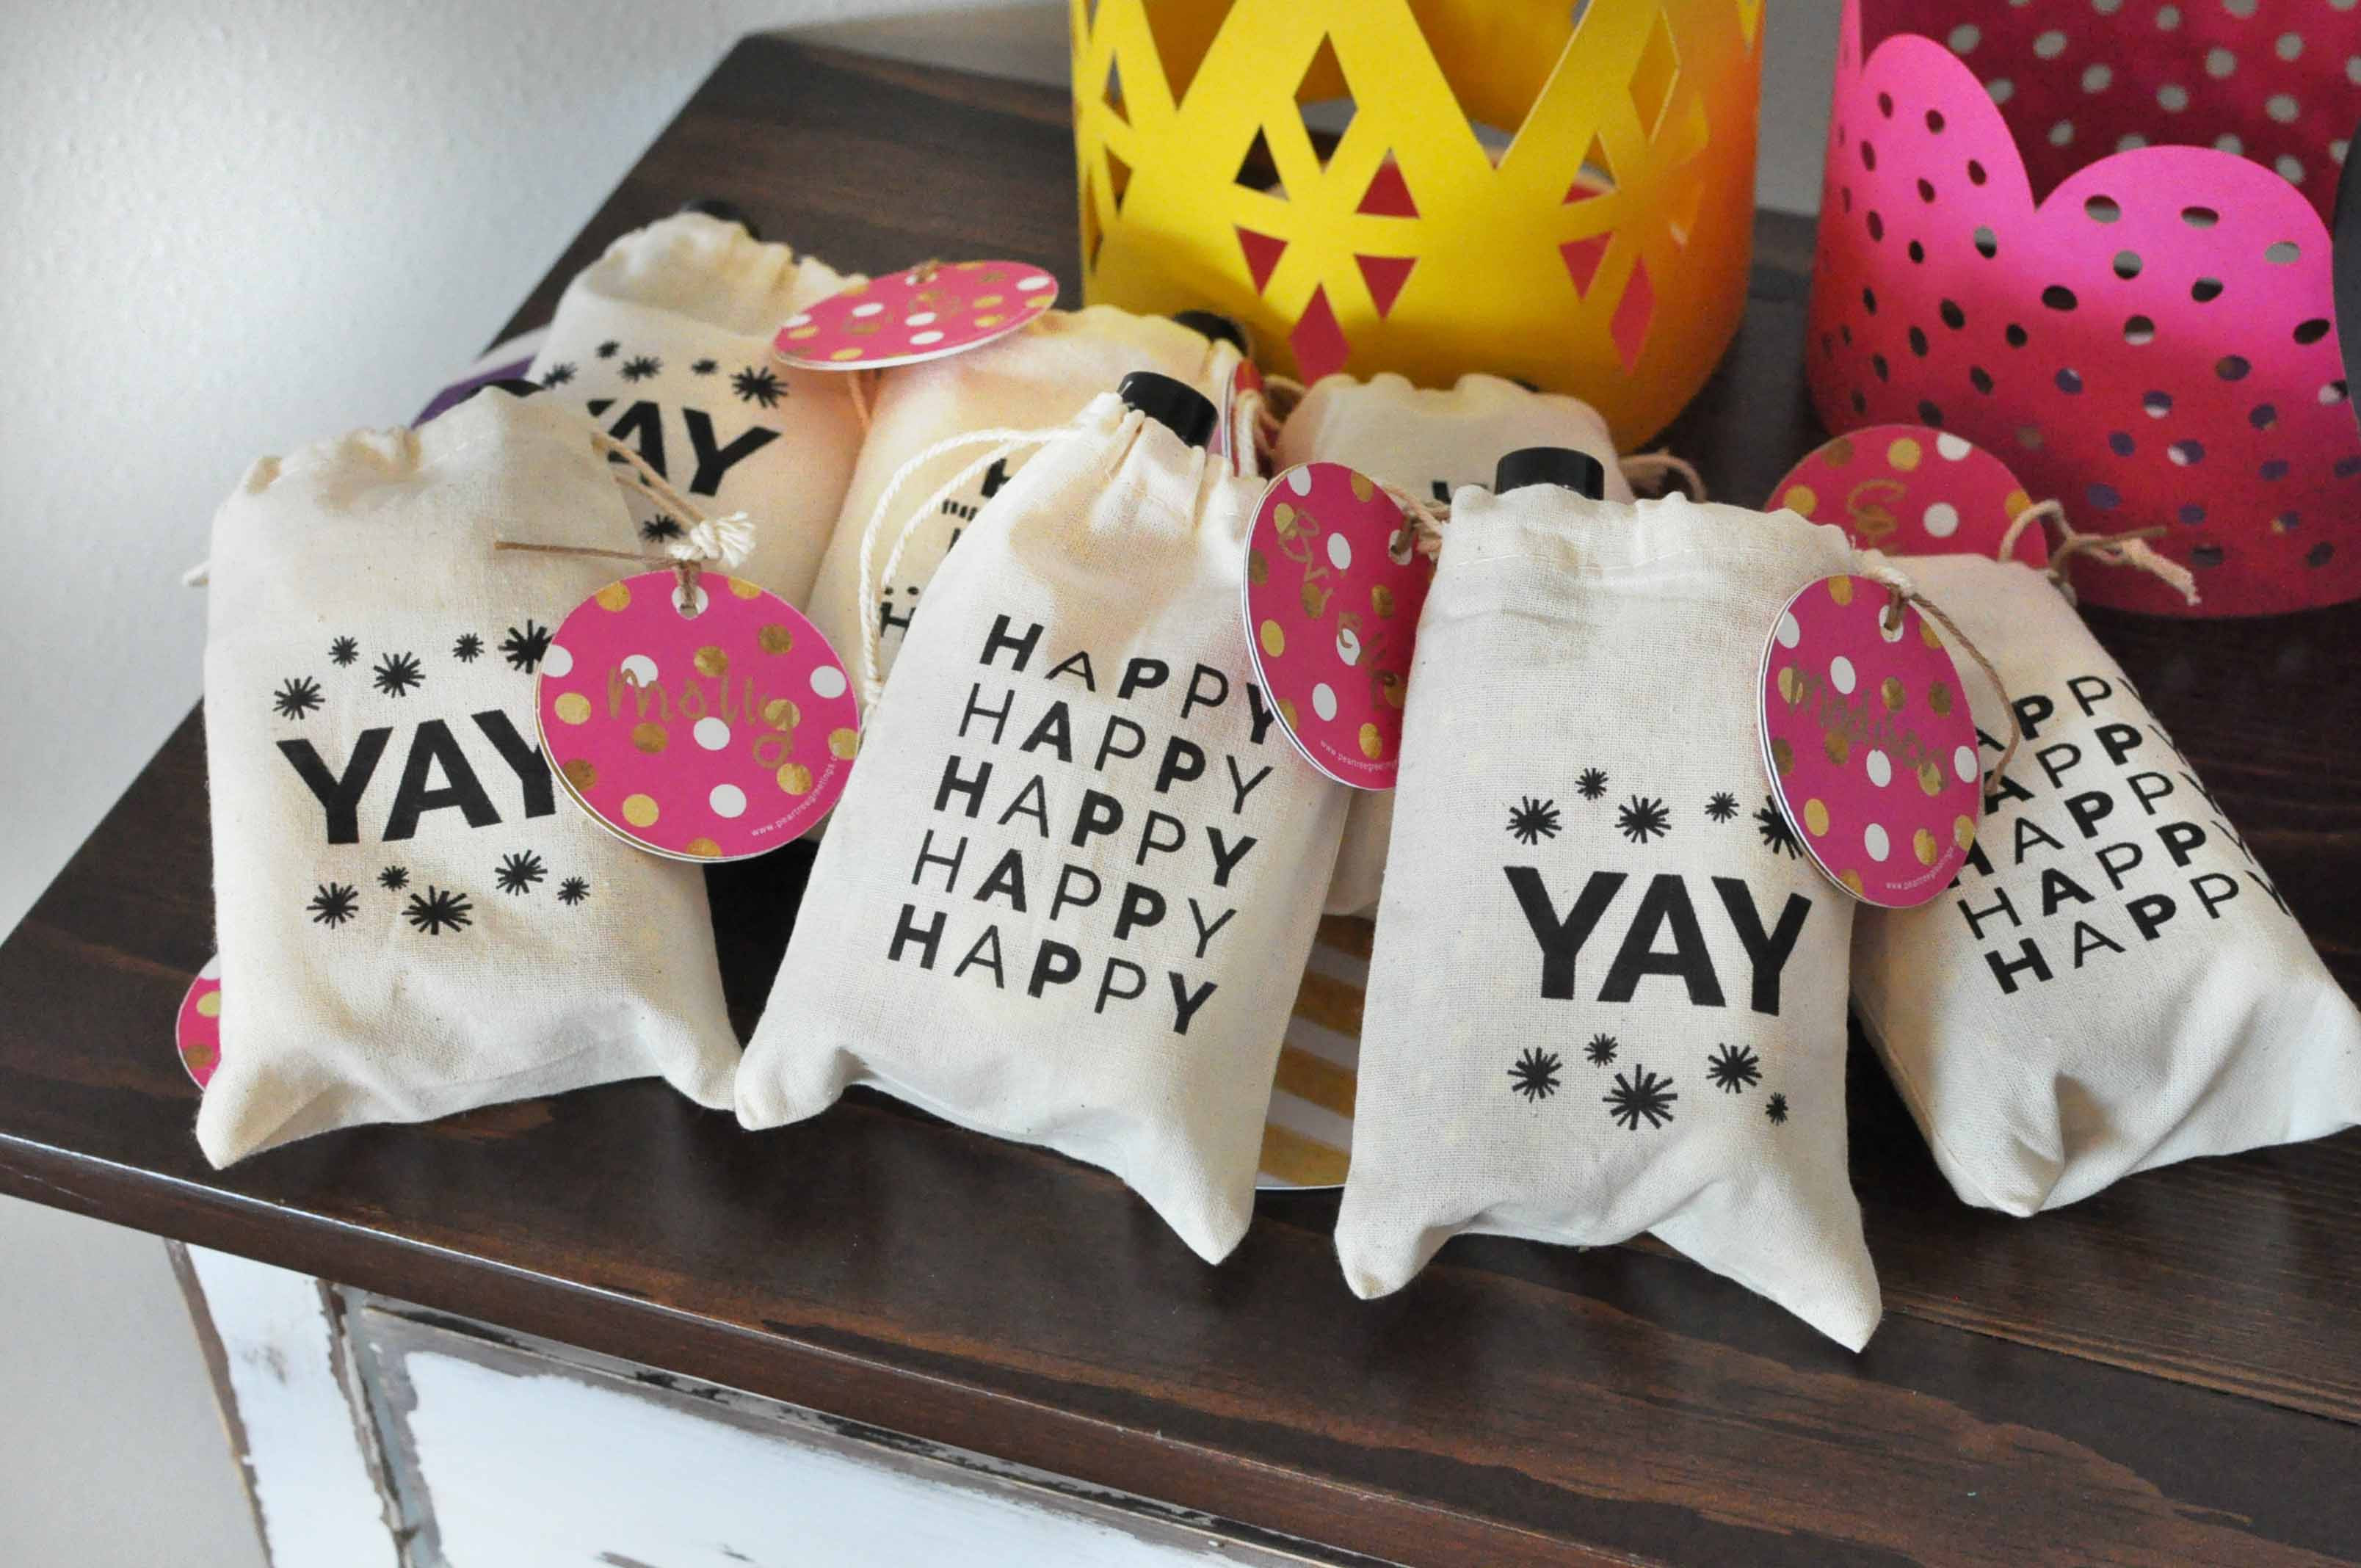 Best ideas about Birthday Goodie Bag Ideas
. Save or Pin best birthday party goo bag ideas Now.